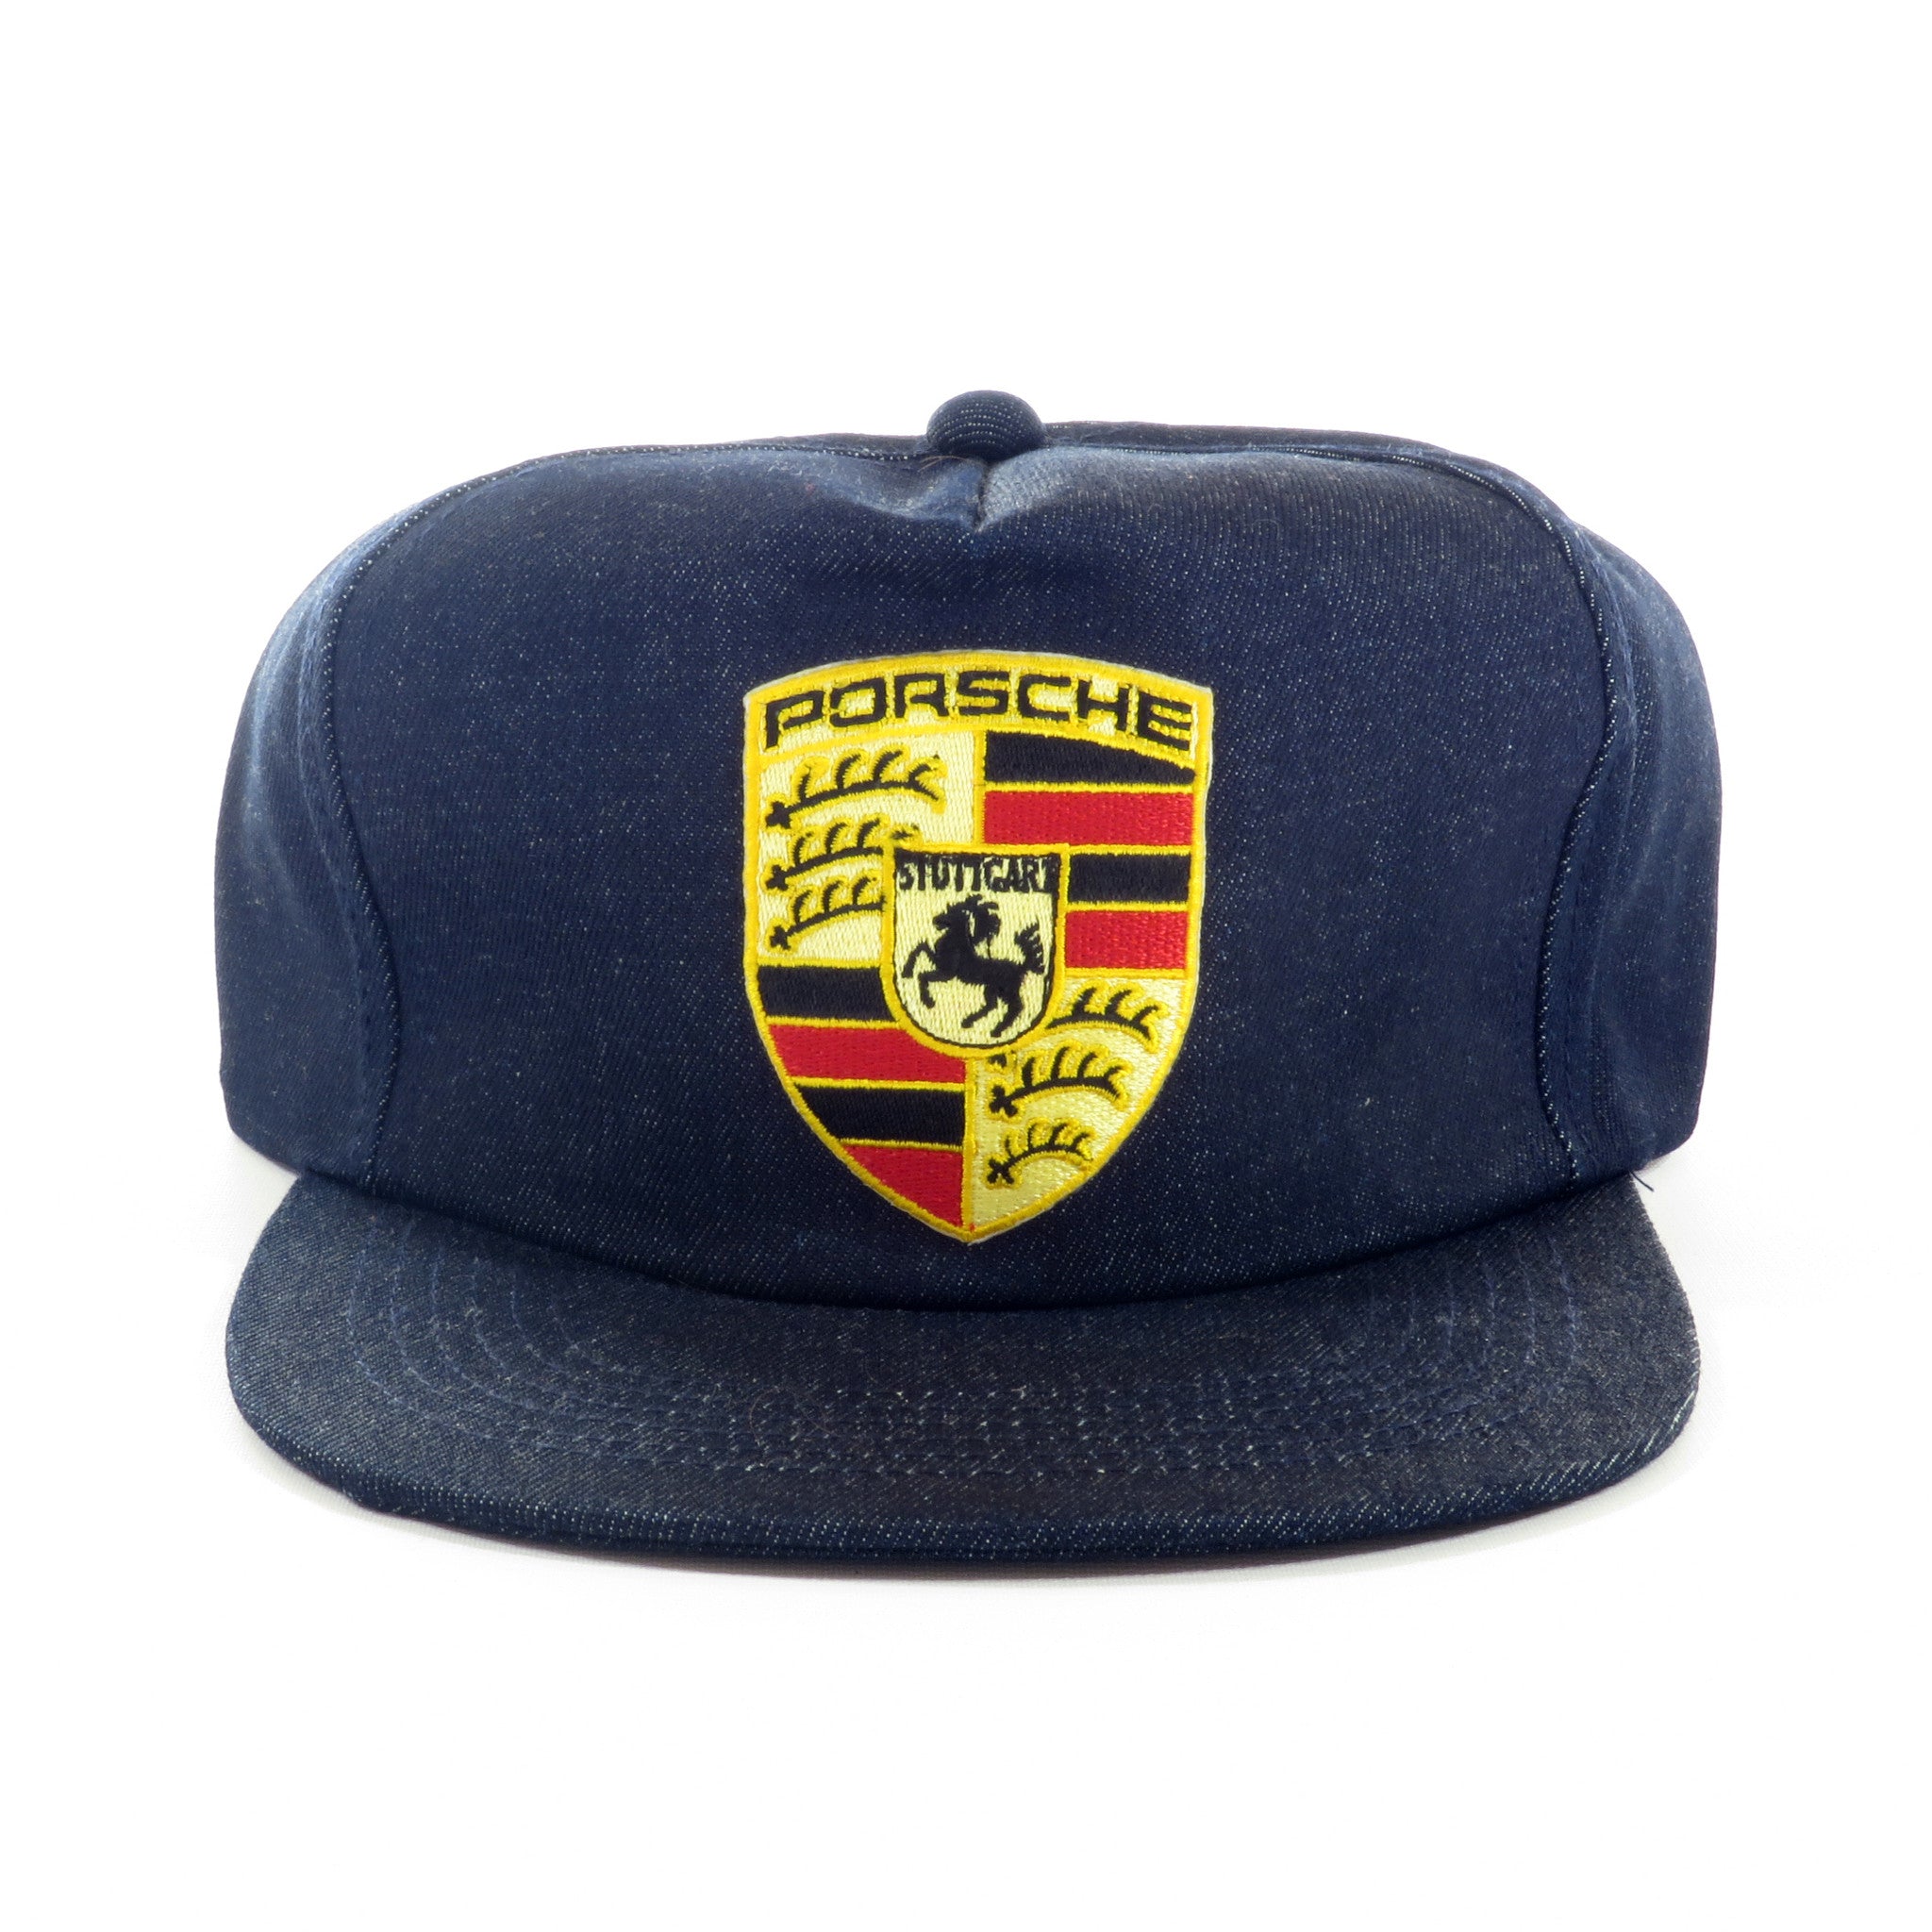 Porsche Raw Denim Snapback Hat